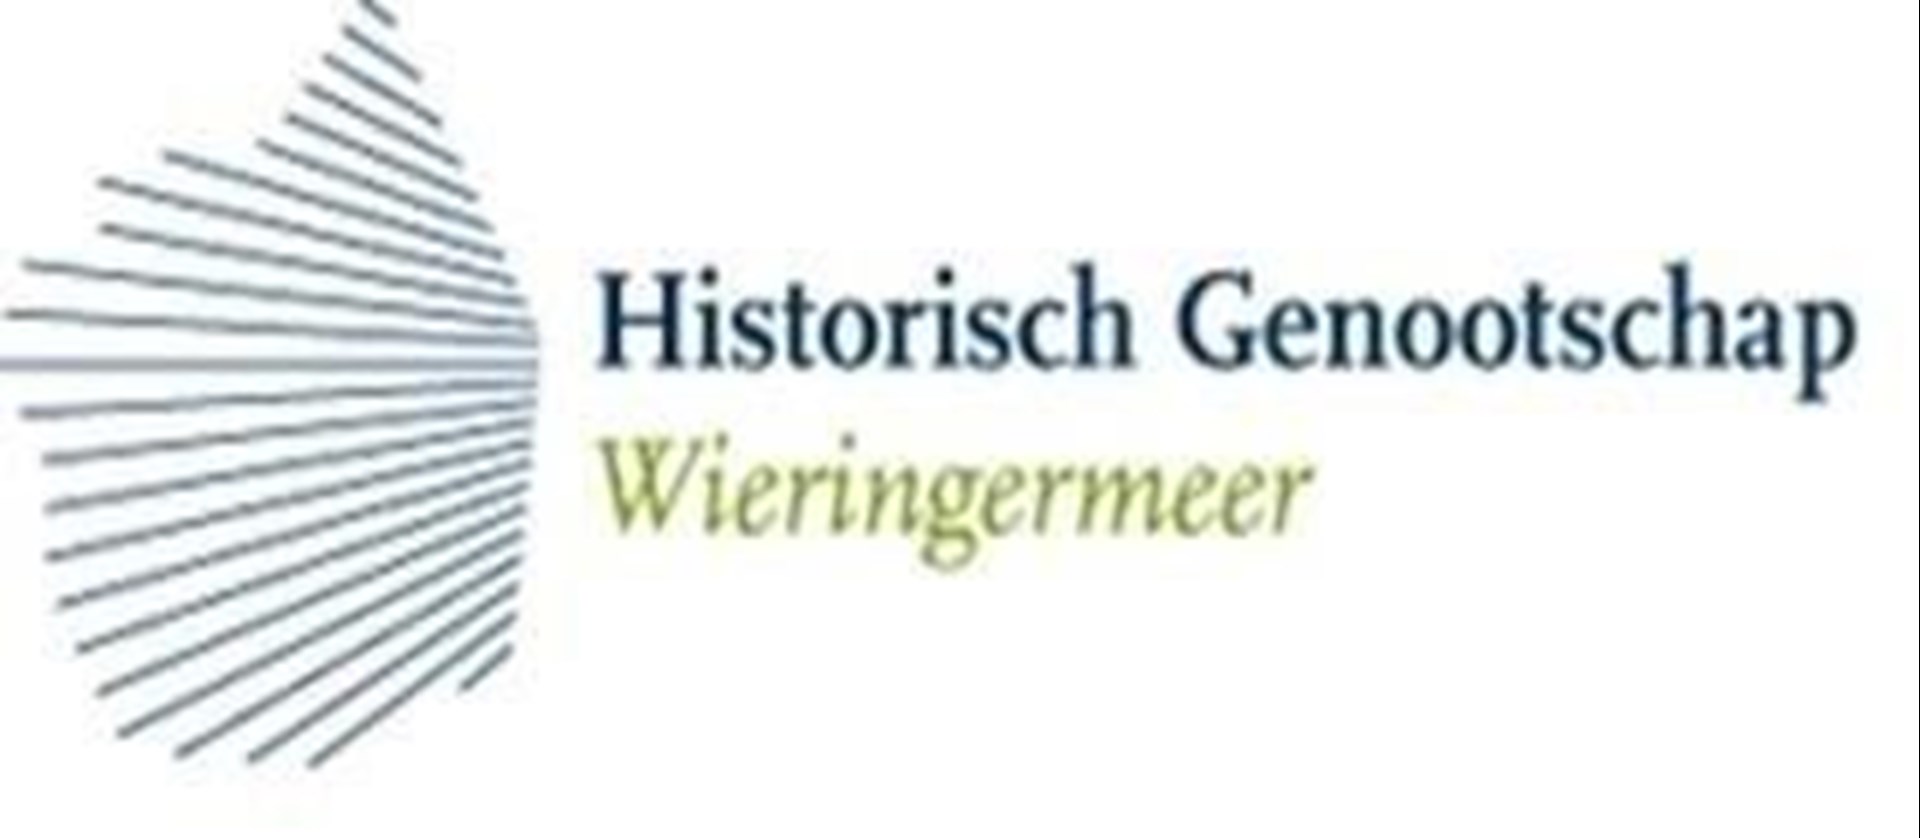 Historische Gesellschaft Wieringermeer banner